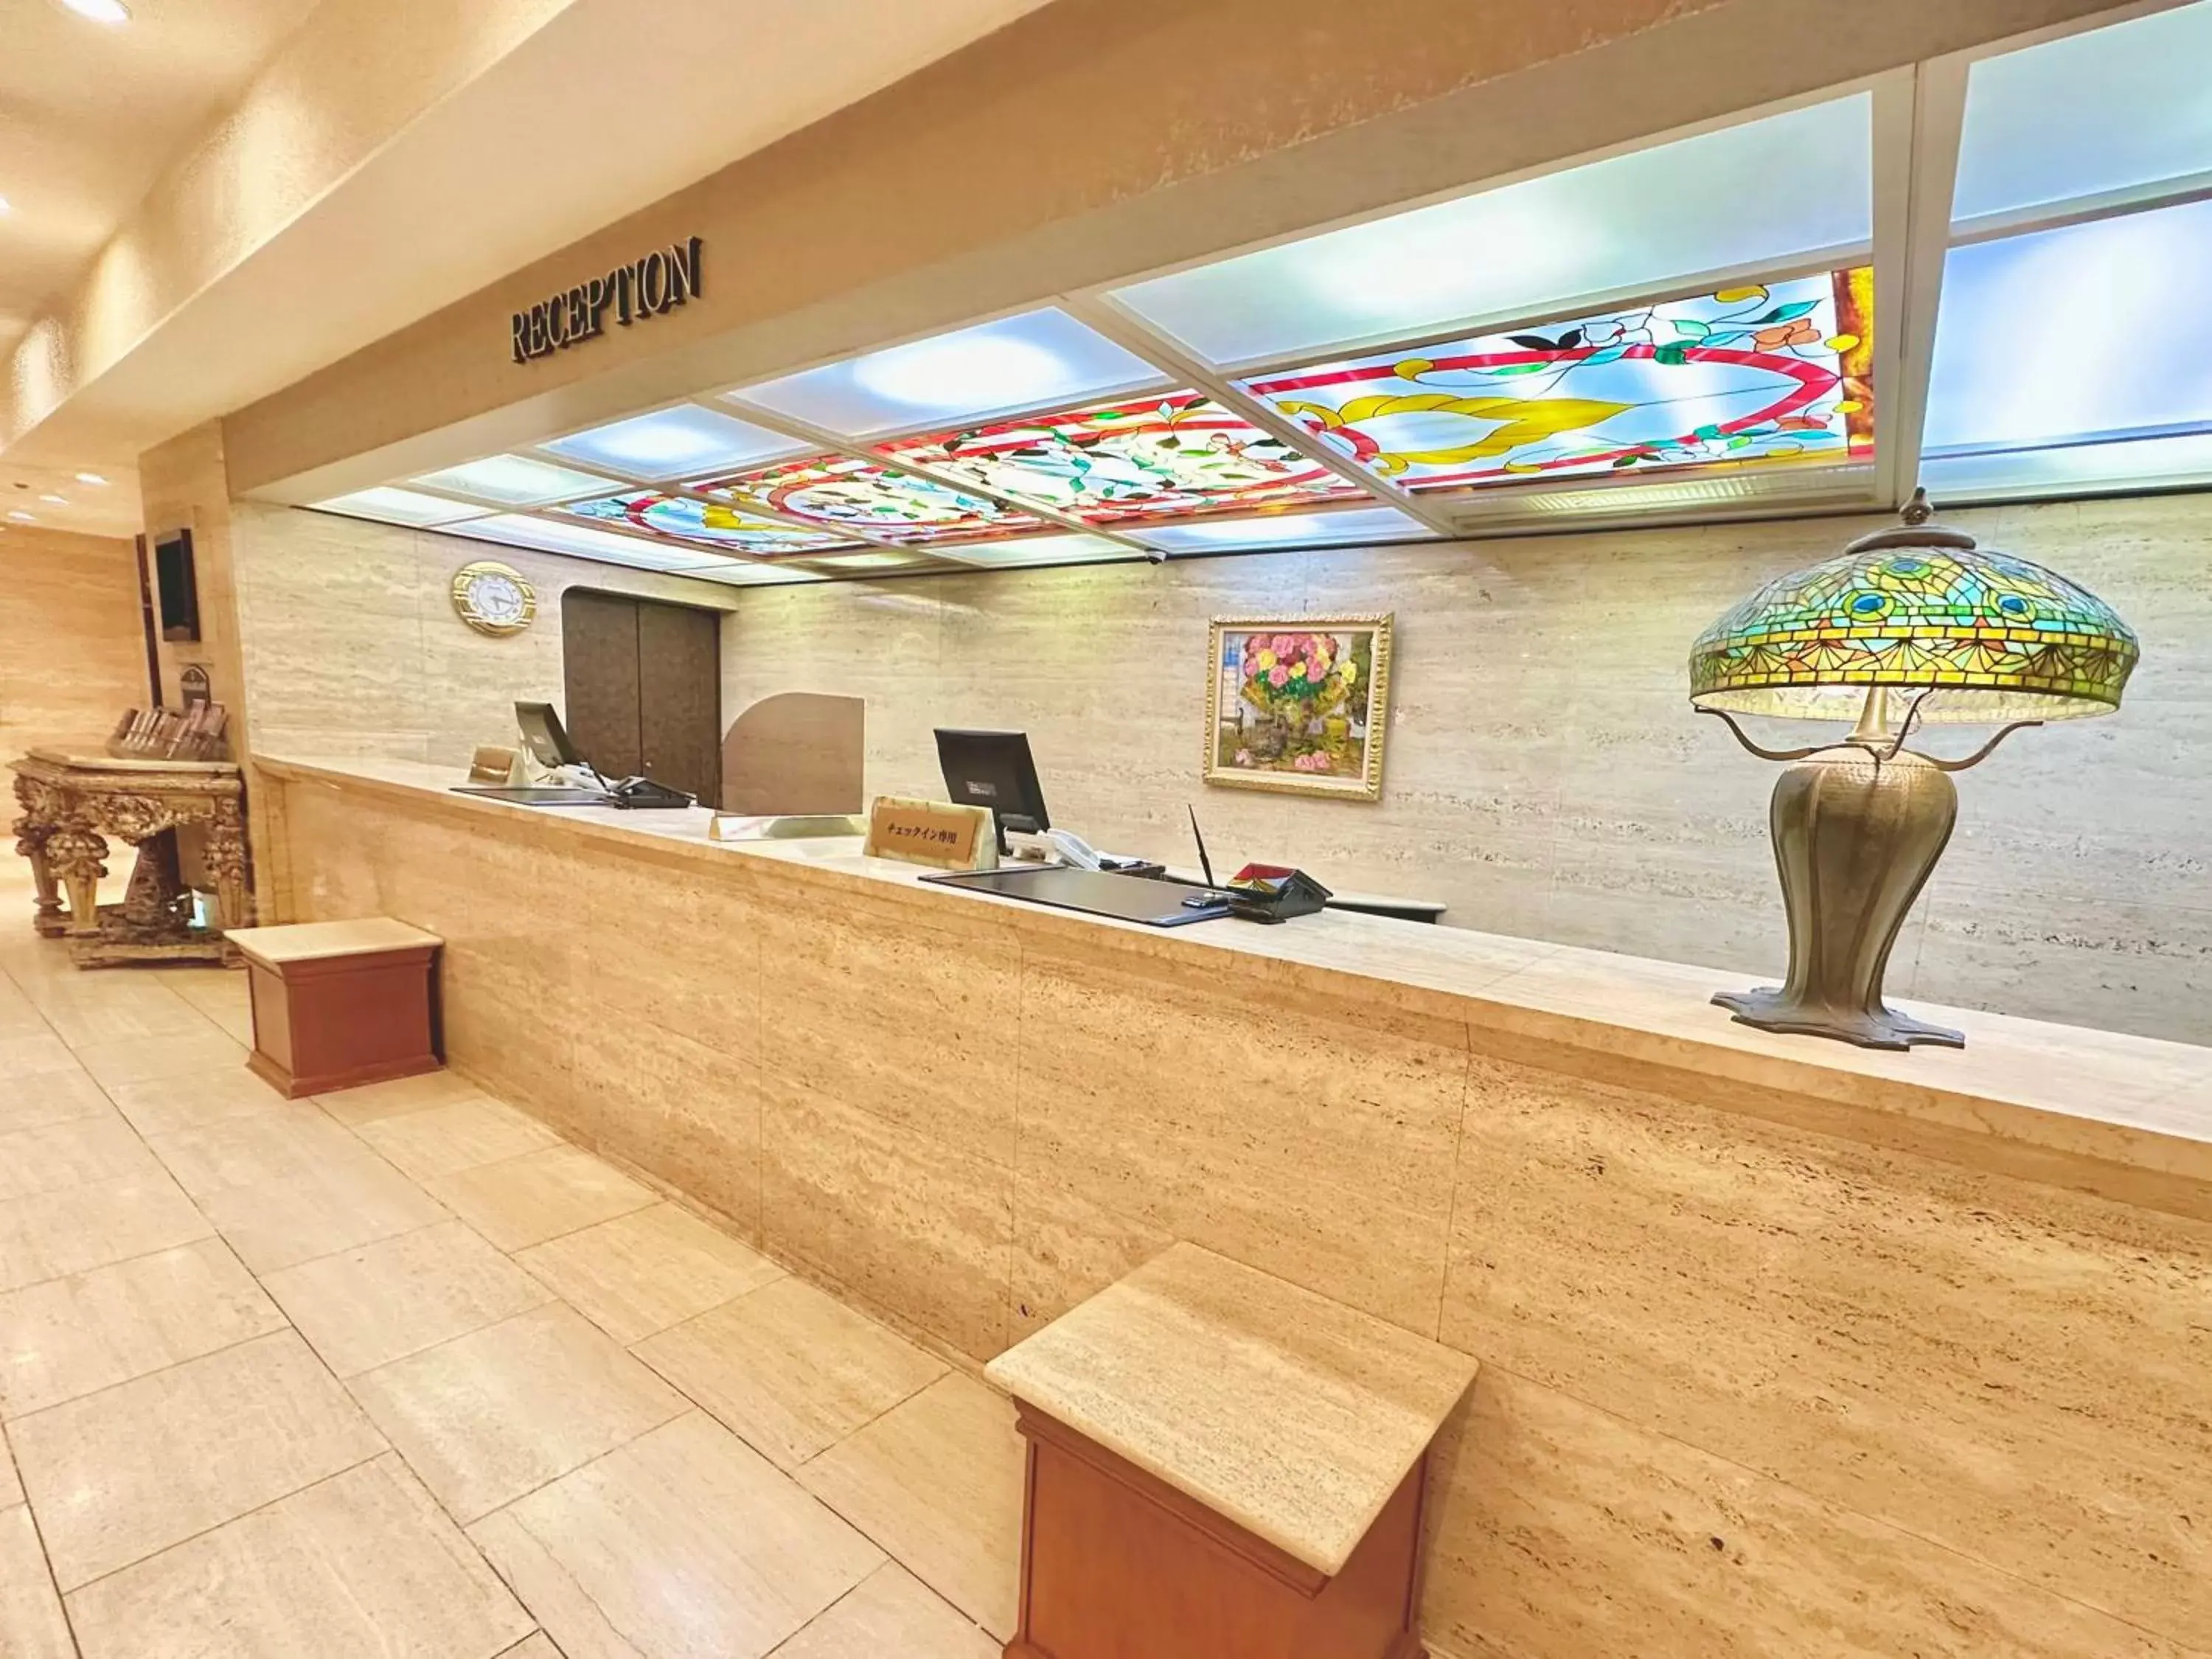 Lobby or reception, Lobby/Reception in New Osaka Hotel